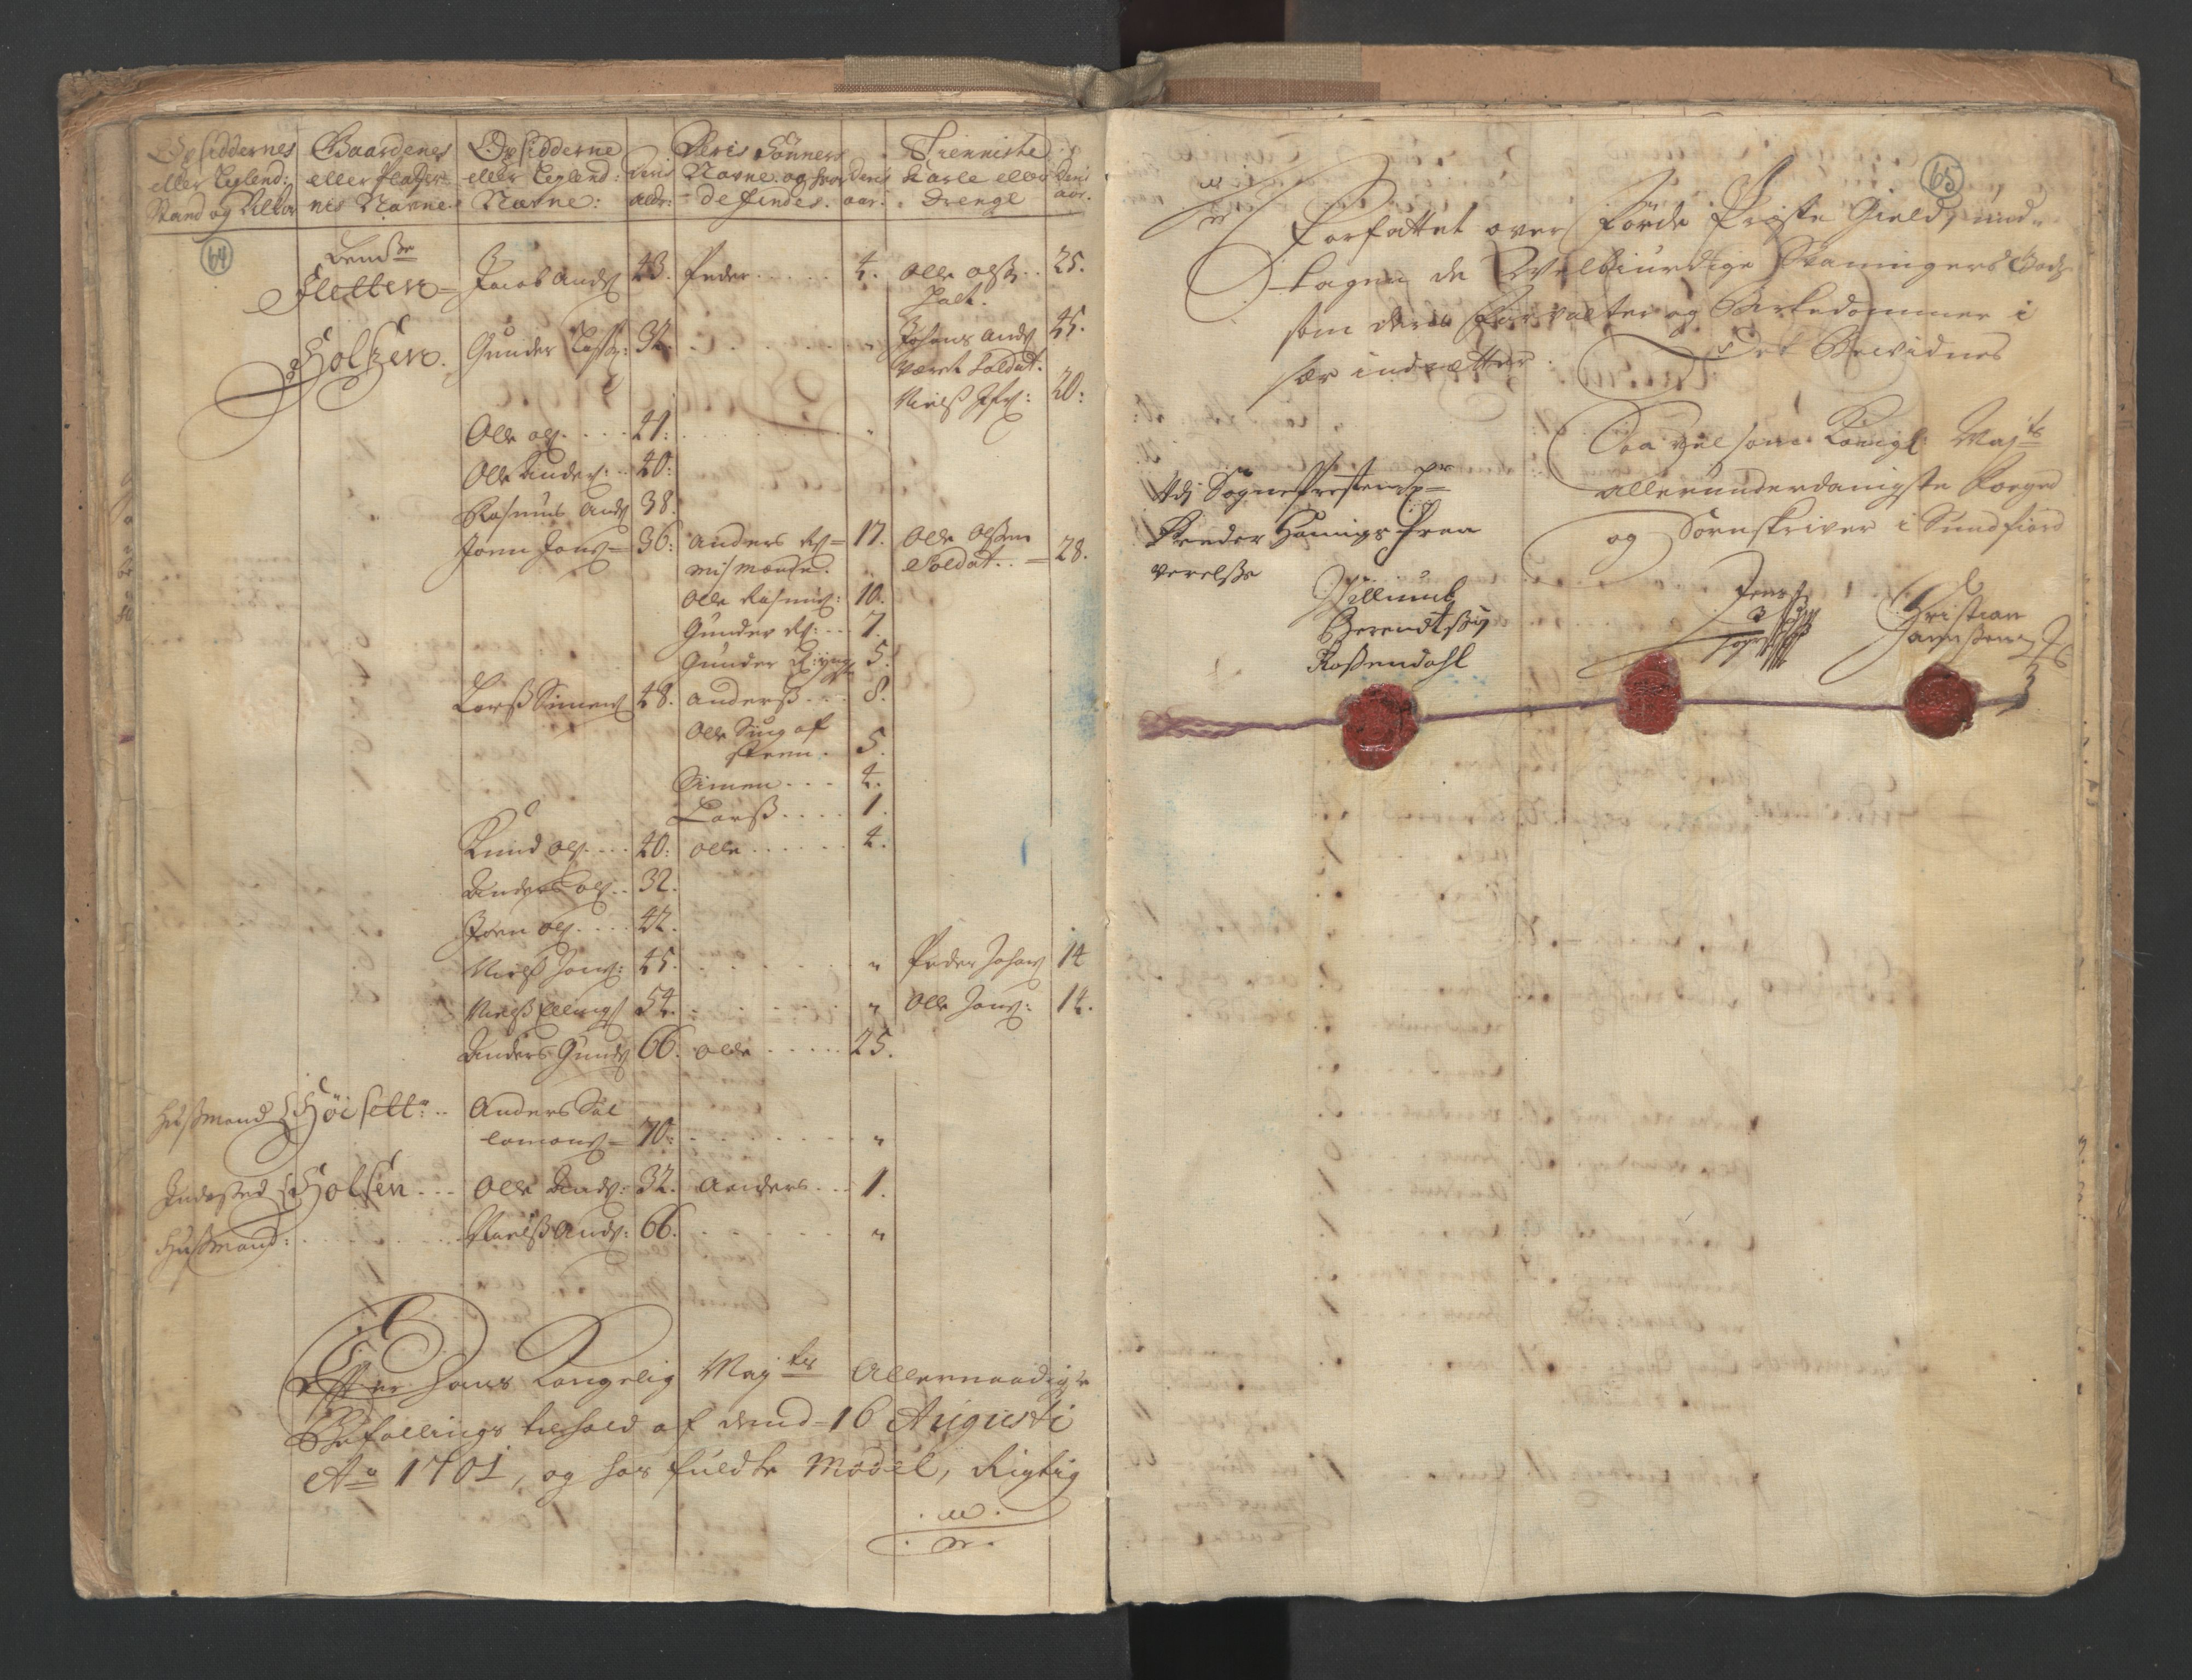 RA, Census (manntall) 1701, no. 9: Sunnfjord fogderi, Nordfjord fogderi and Svanø birk, 1701, p. 64-65